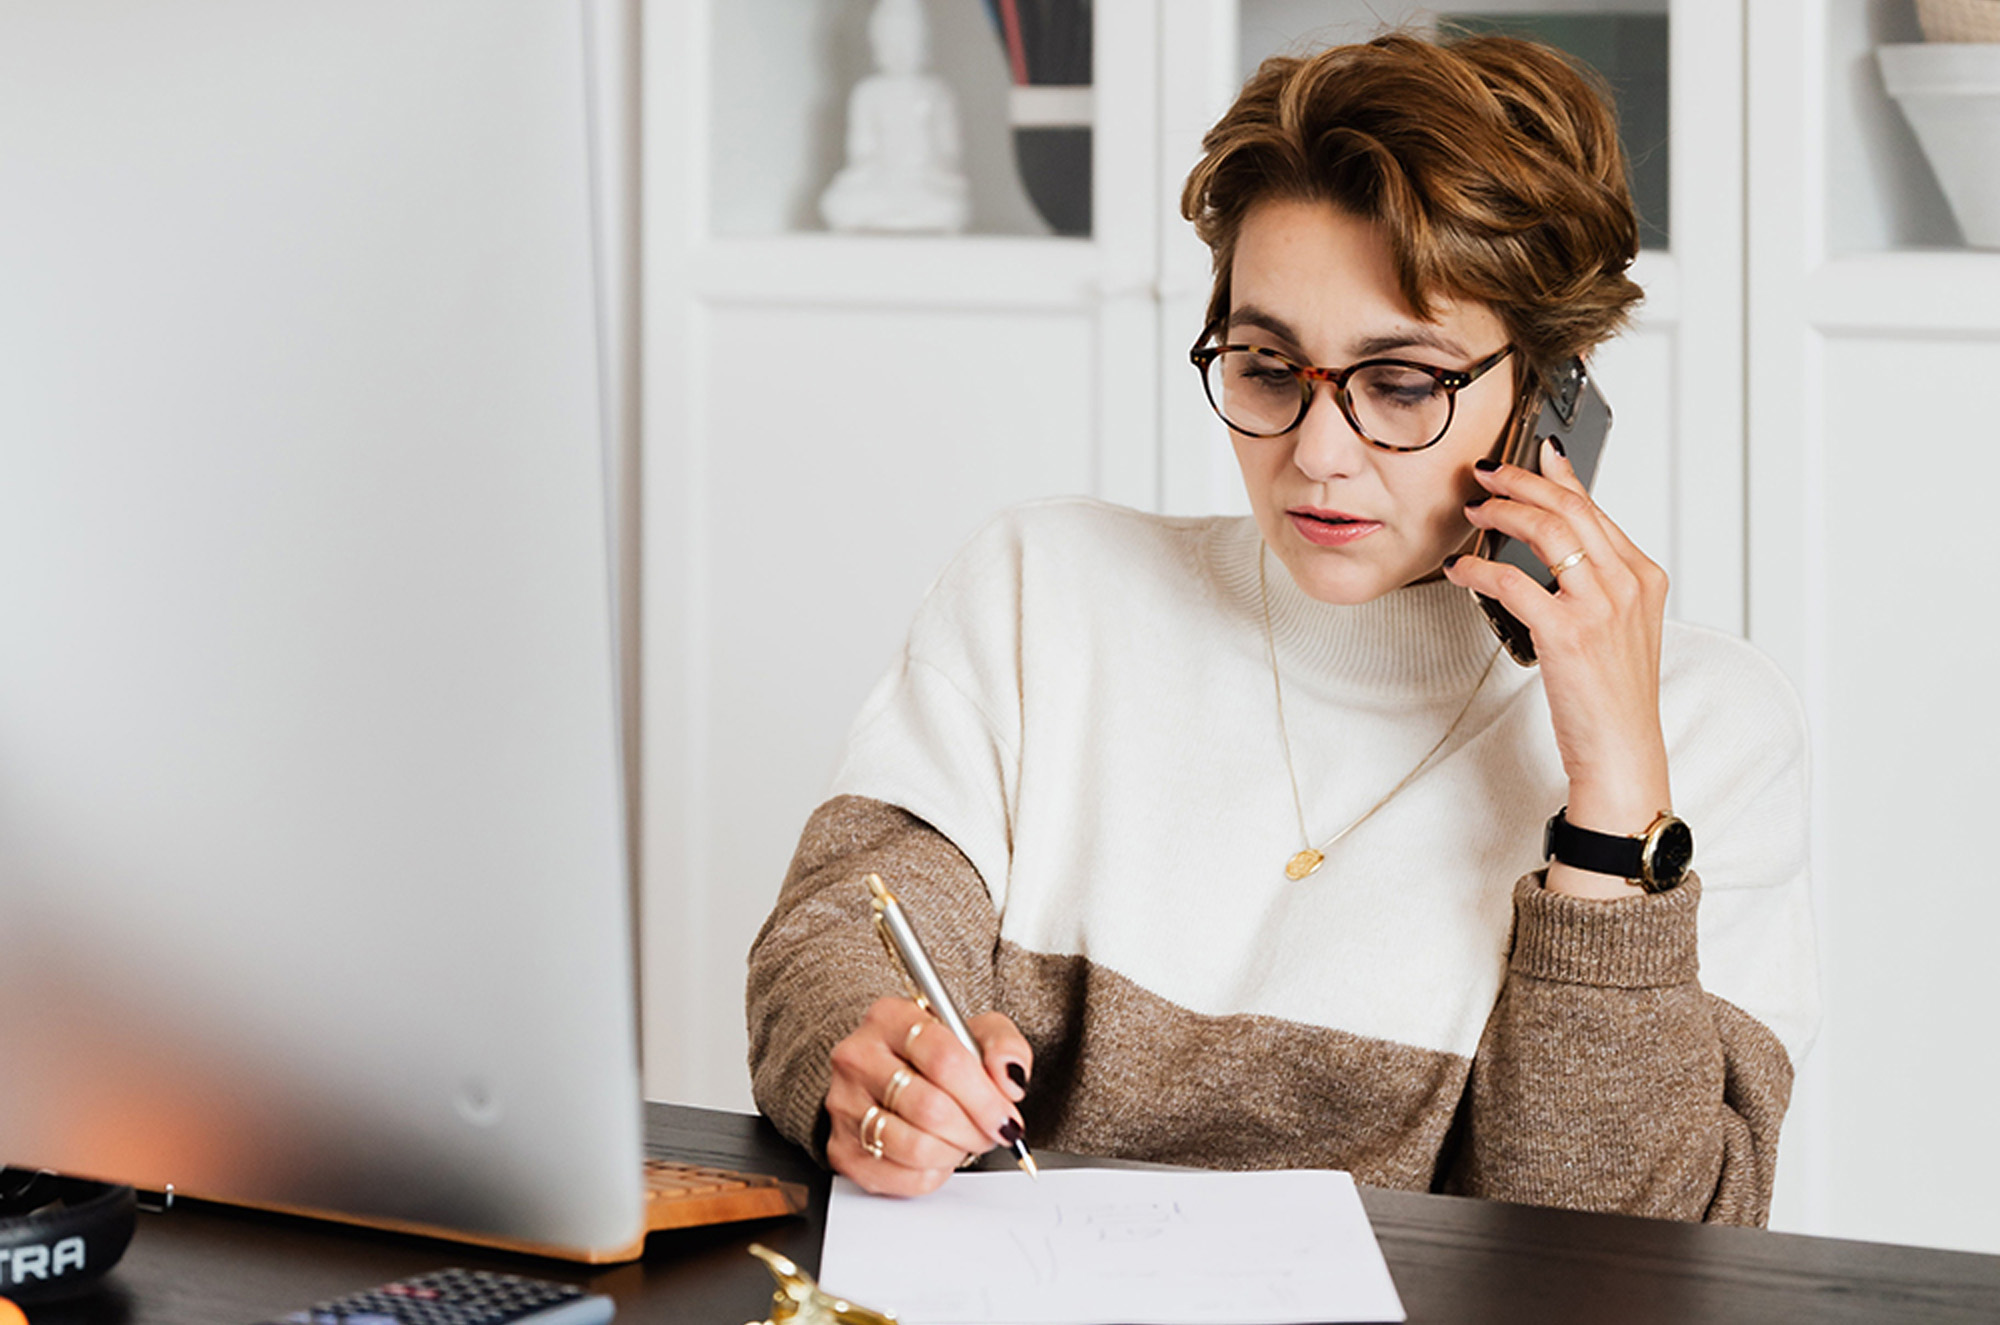 Photographie d'une femme aux cheveux courts et avec des lunettes et un pull bicolore blanc et marron. Celle-ci est au téléphone et écrit en même temps sur une feuille.